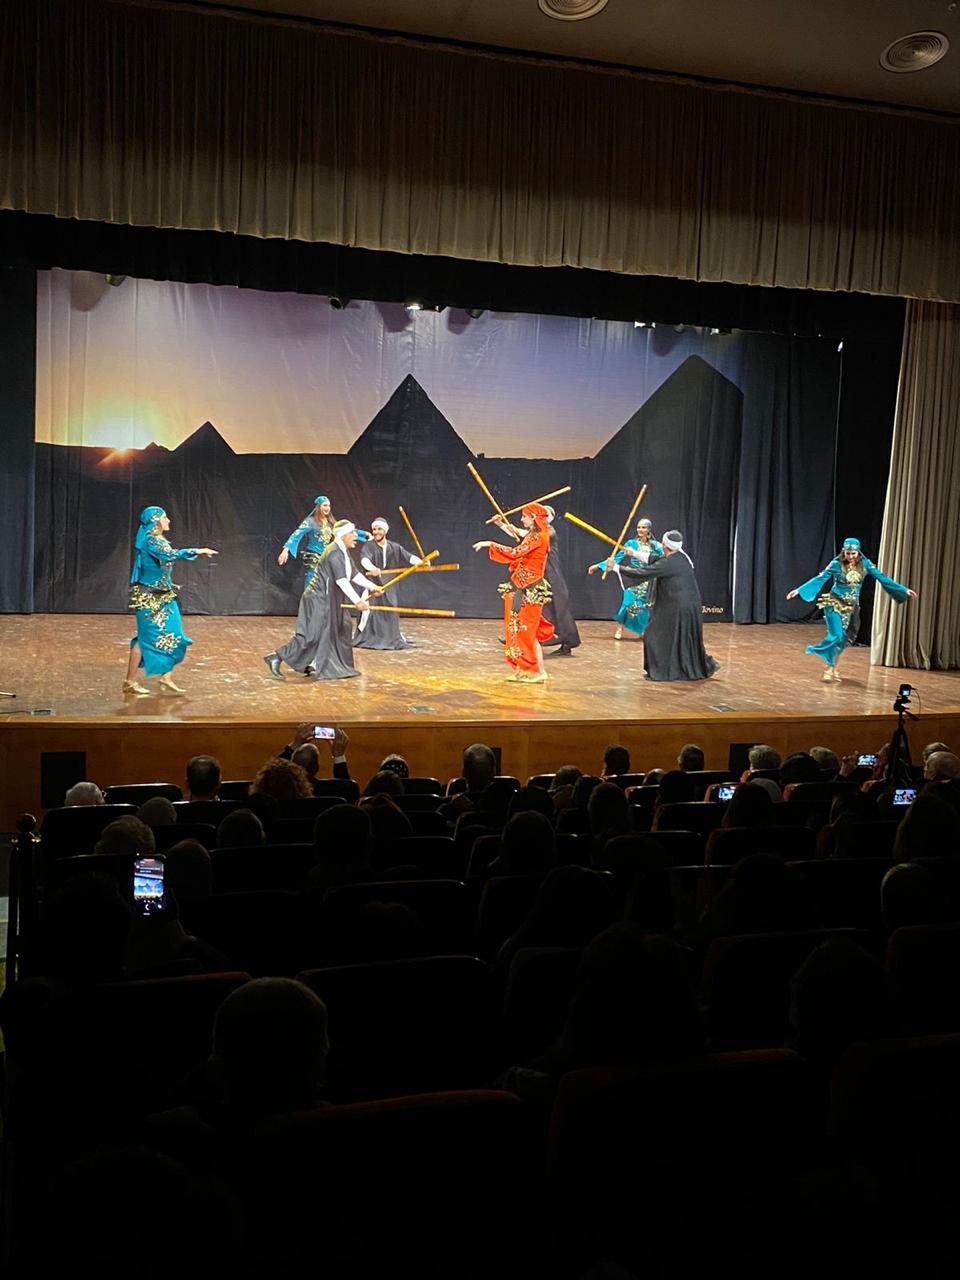 حفل فلكلوري مصري- إيطالي ومعرض تفاعلي للرسوم المتحركة بالمتحف القومي للحضارة المصرية